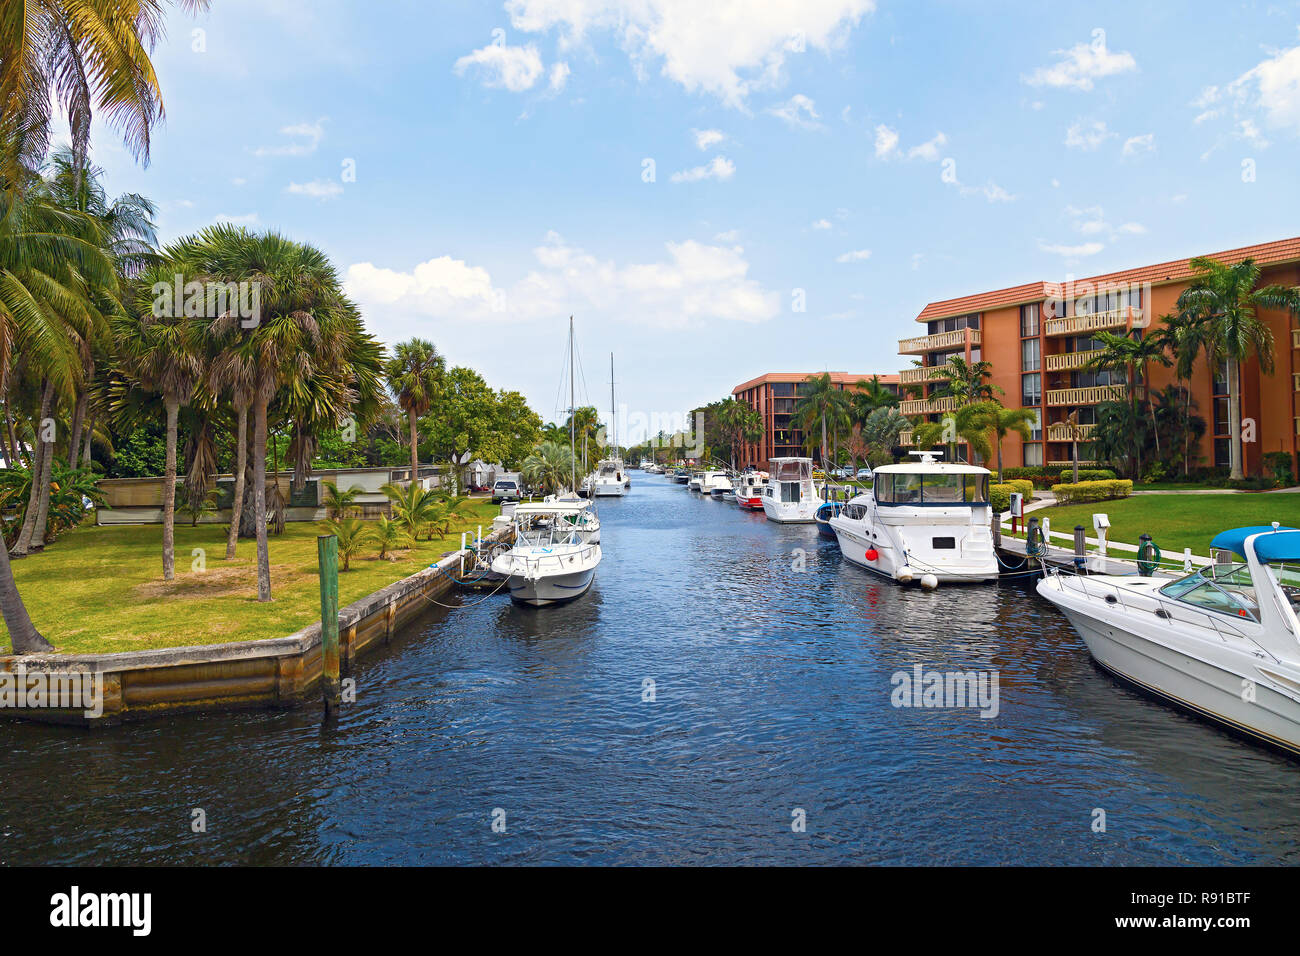 La circulation de l'eau banlieue de Miami. Bateaux et de palmiers le long de la rue du canal. Banque D'Images